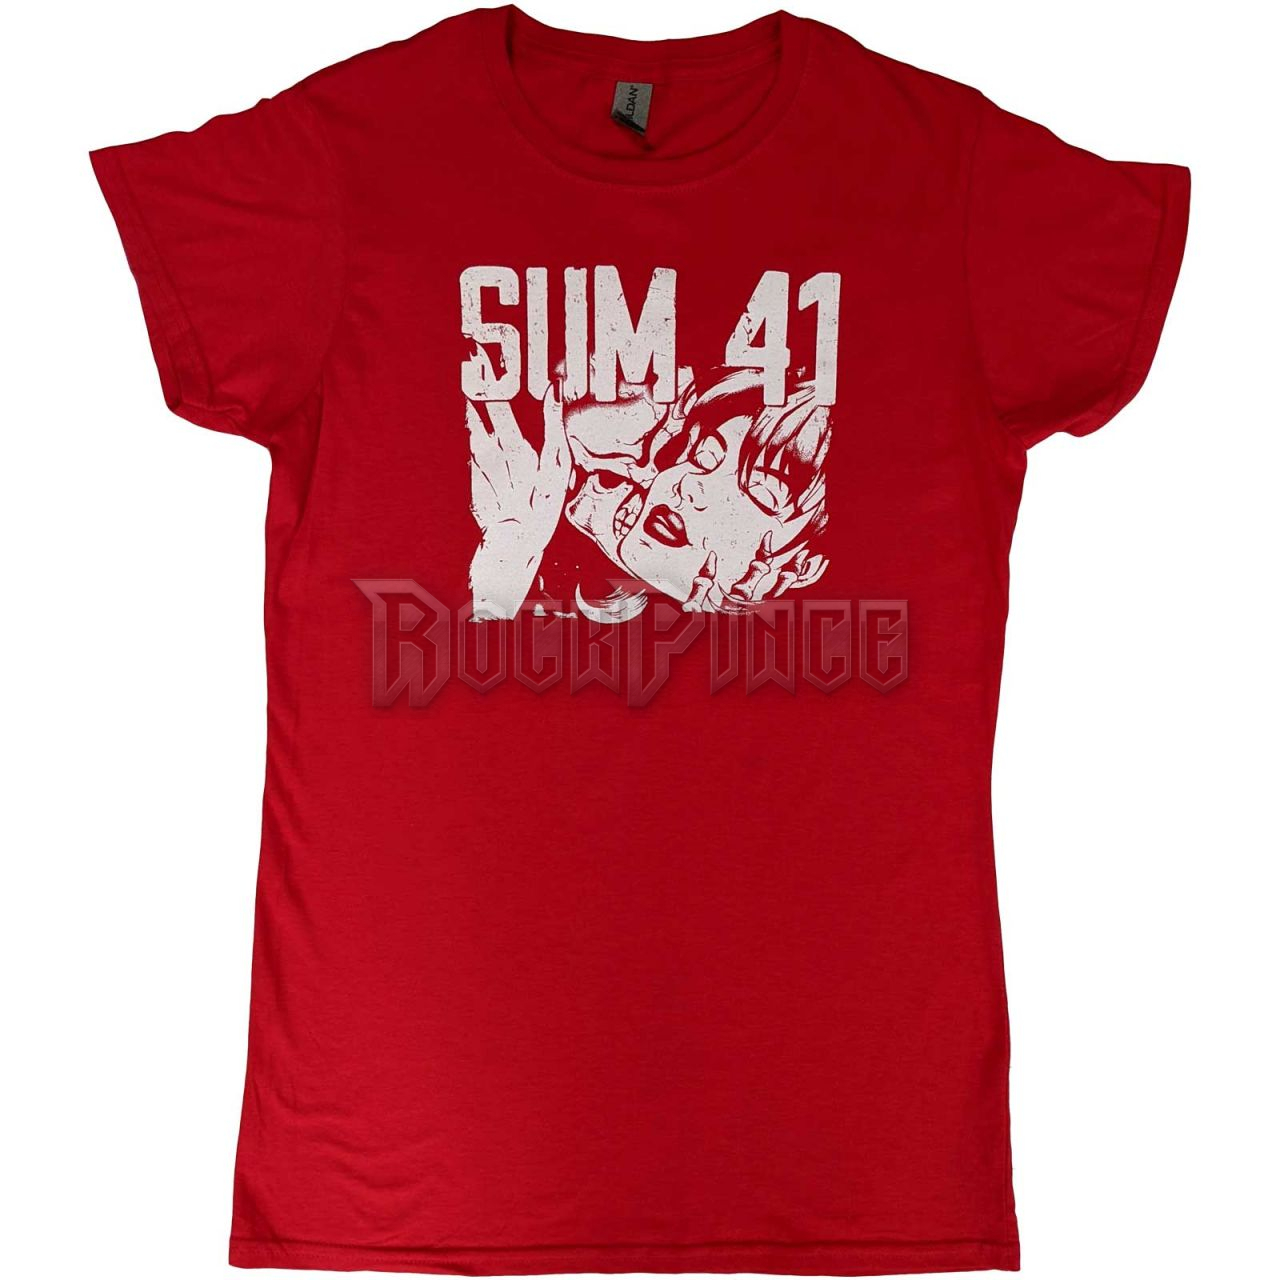 Sum 41 - Embrace - női póló - SUMTS13LR